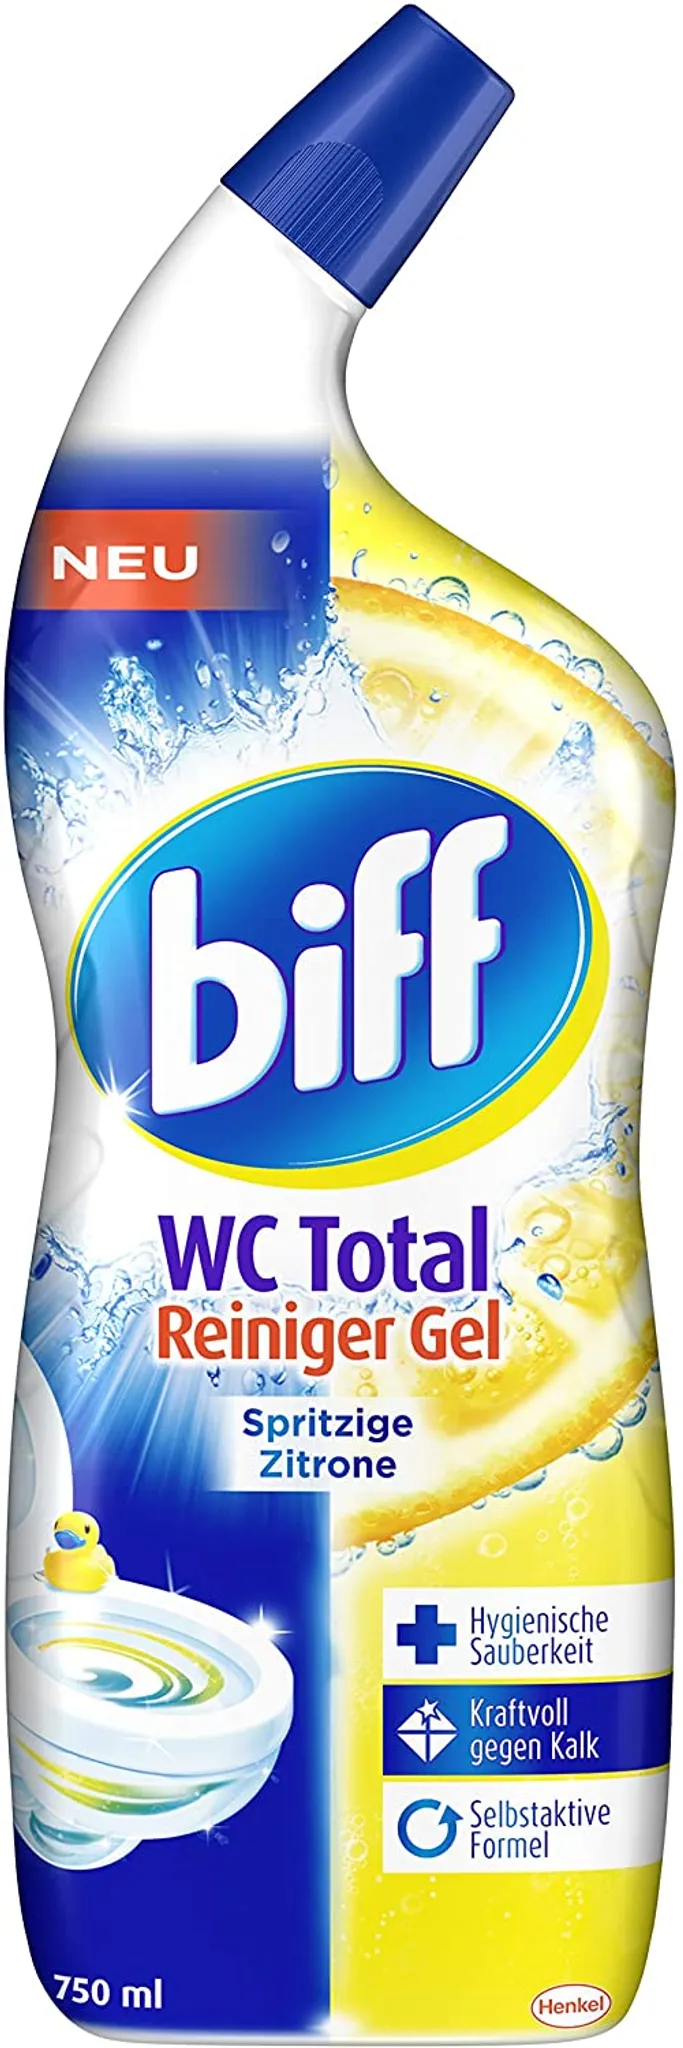 Biff WC Total Reiniger Gel Spritzige Zitrone